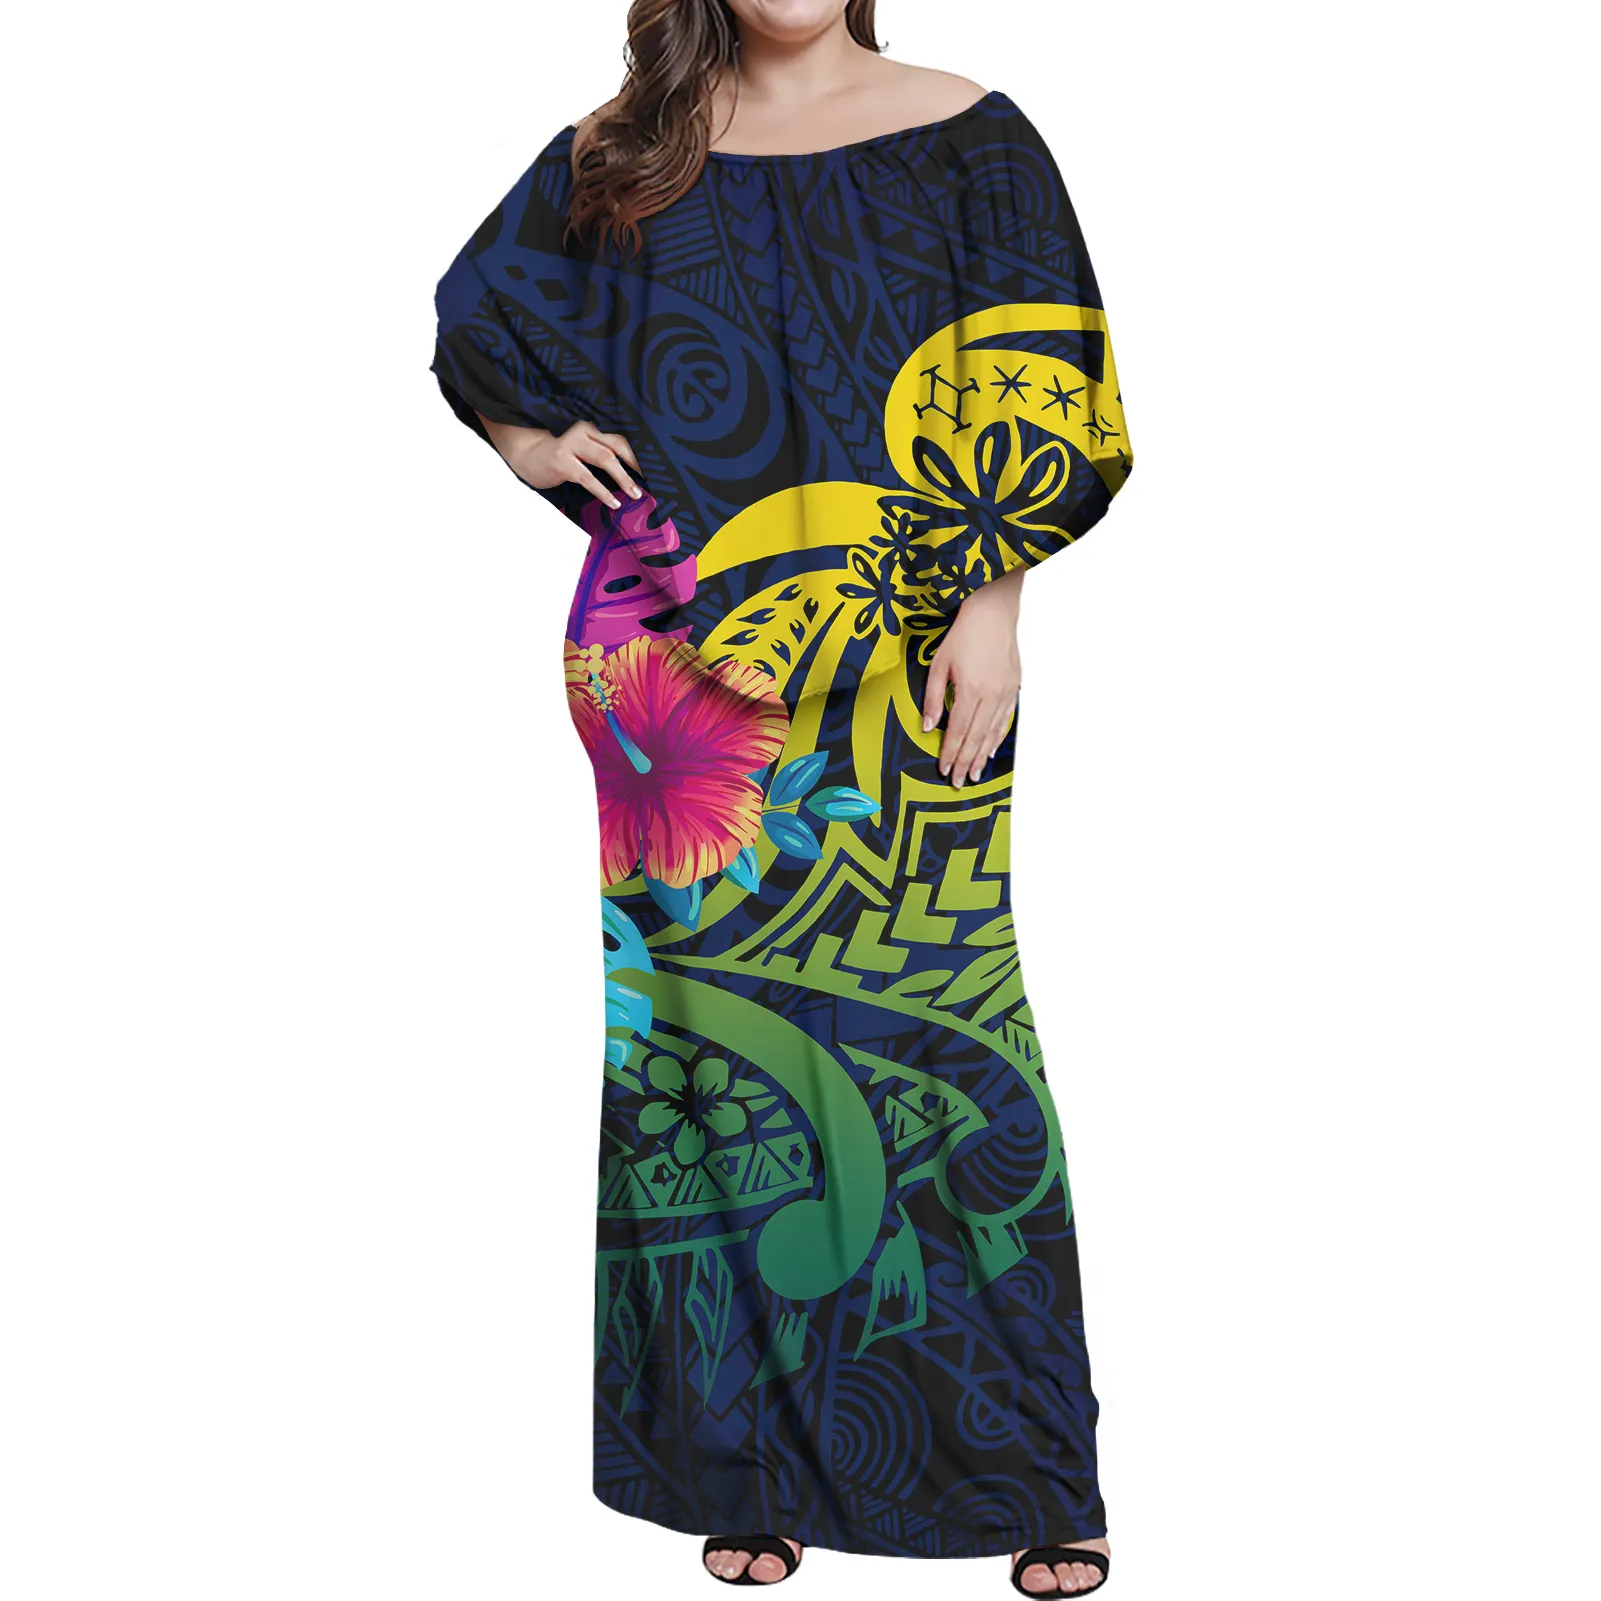 Прямая поставка, дешевое высококачественное женское платье, полинезийский Племенной дизайн, женское длинное платье раста с оборками, женское сексуальное облегающее платье